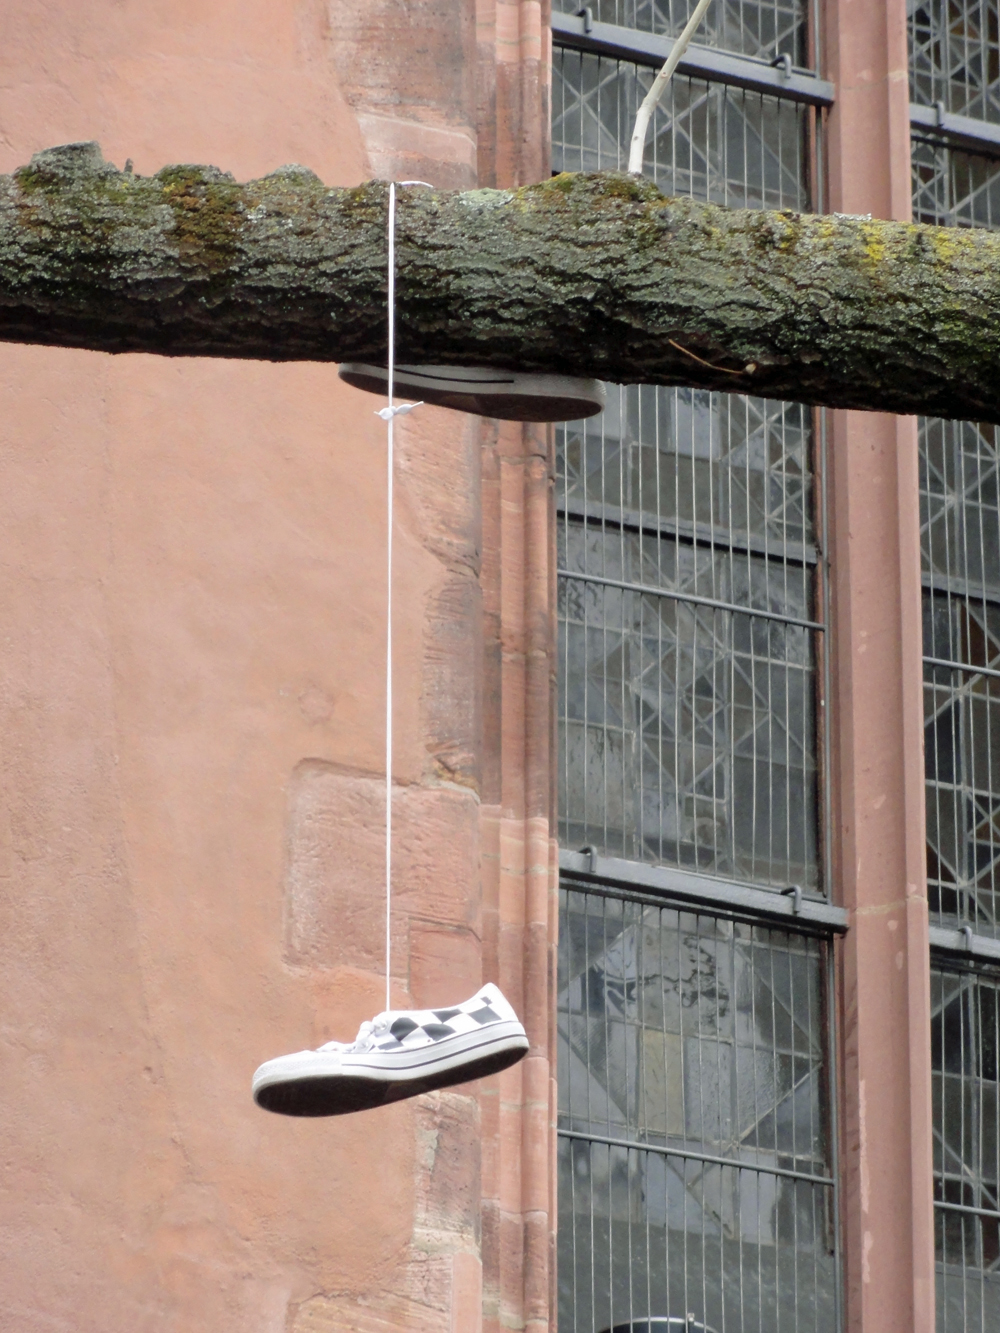 Schuhe an Schnürsenkeln aufgehangen im öffentlichen Raum